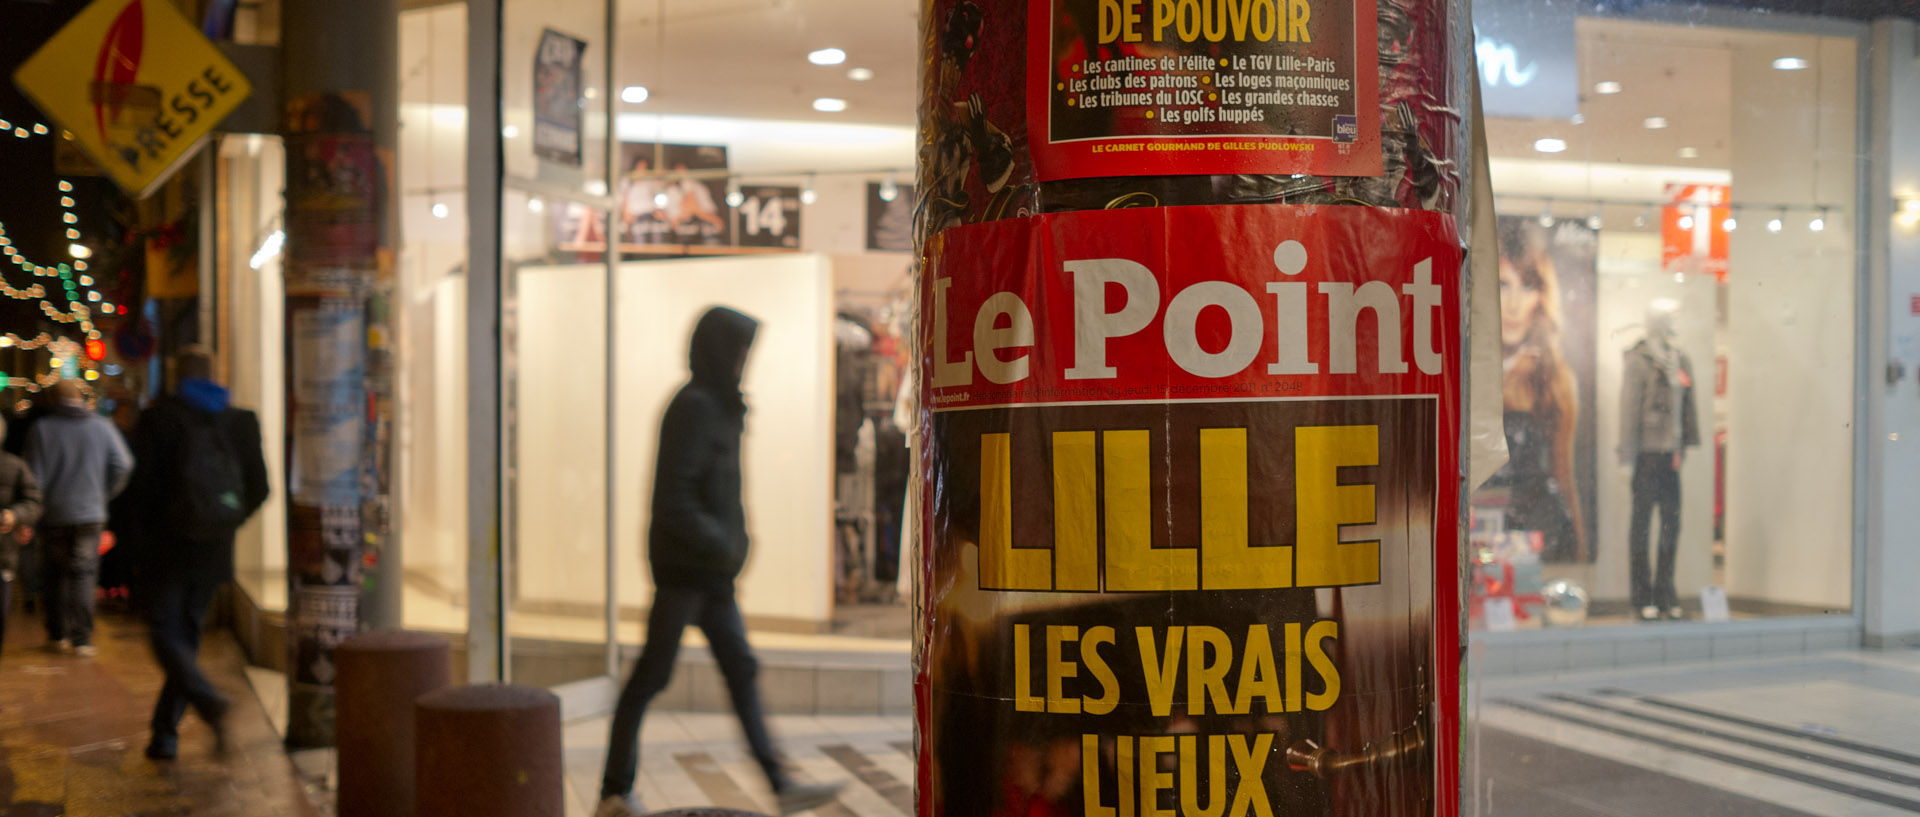 Publicité pour un numéro du Point consacré à Lille, à l'entrée du centre commercial, rue Gambetta, à Wazemmes, Lille.